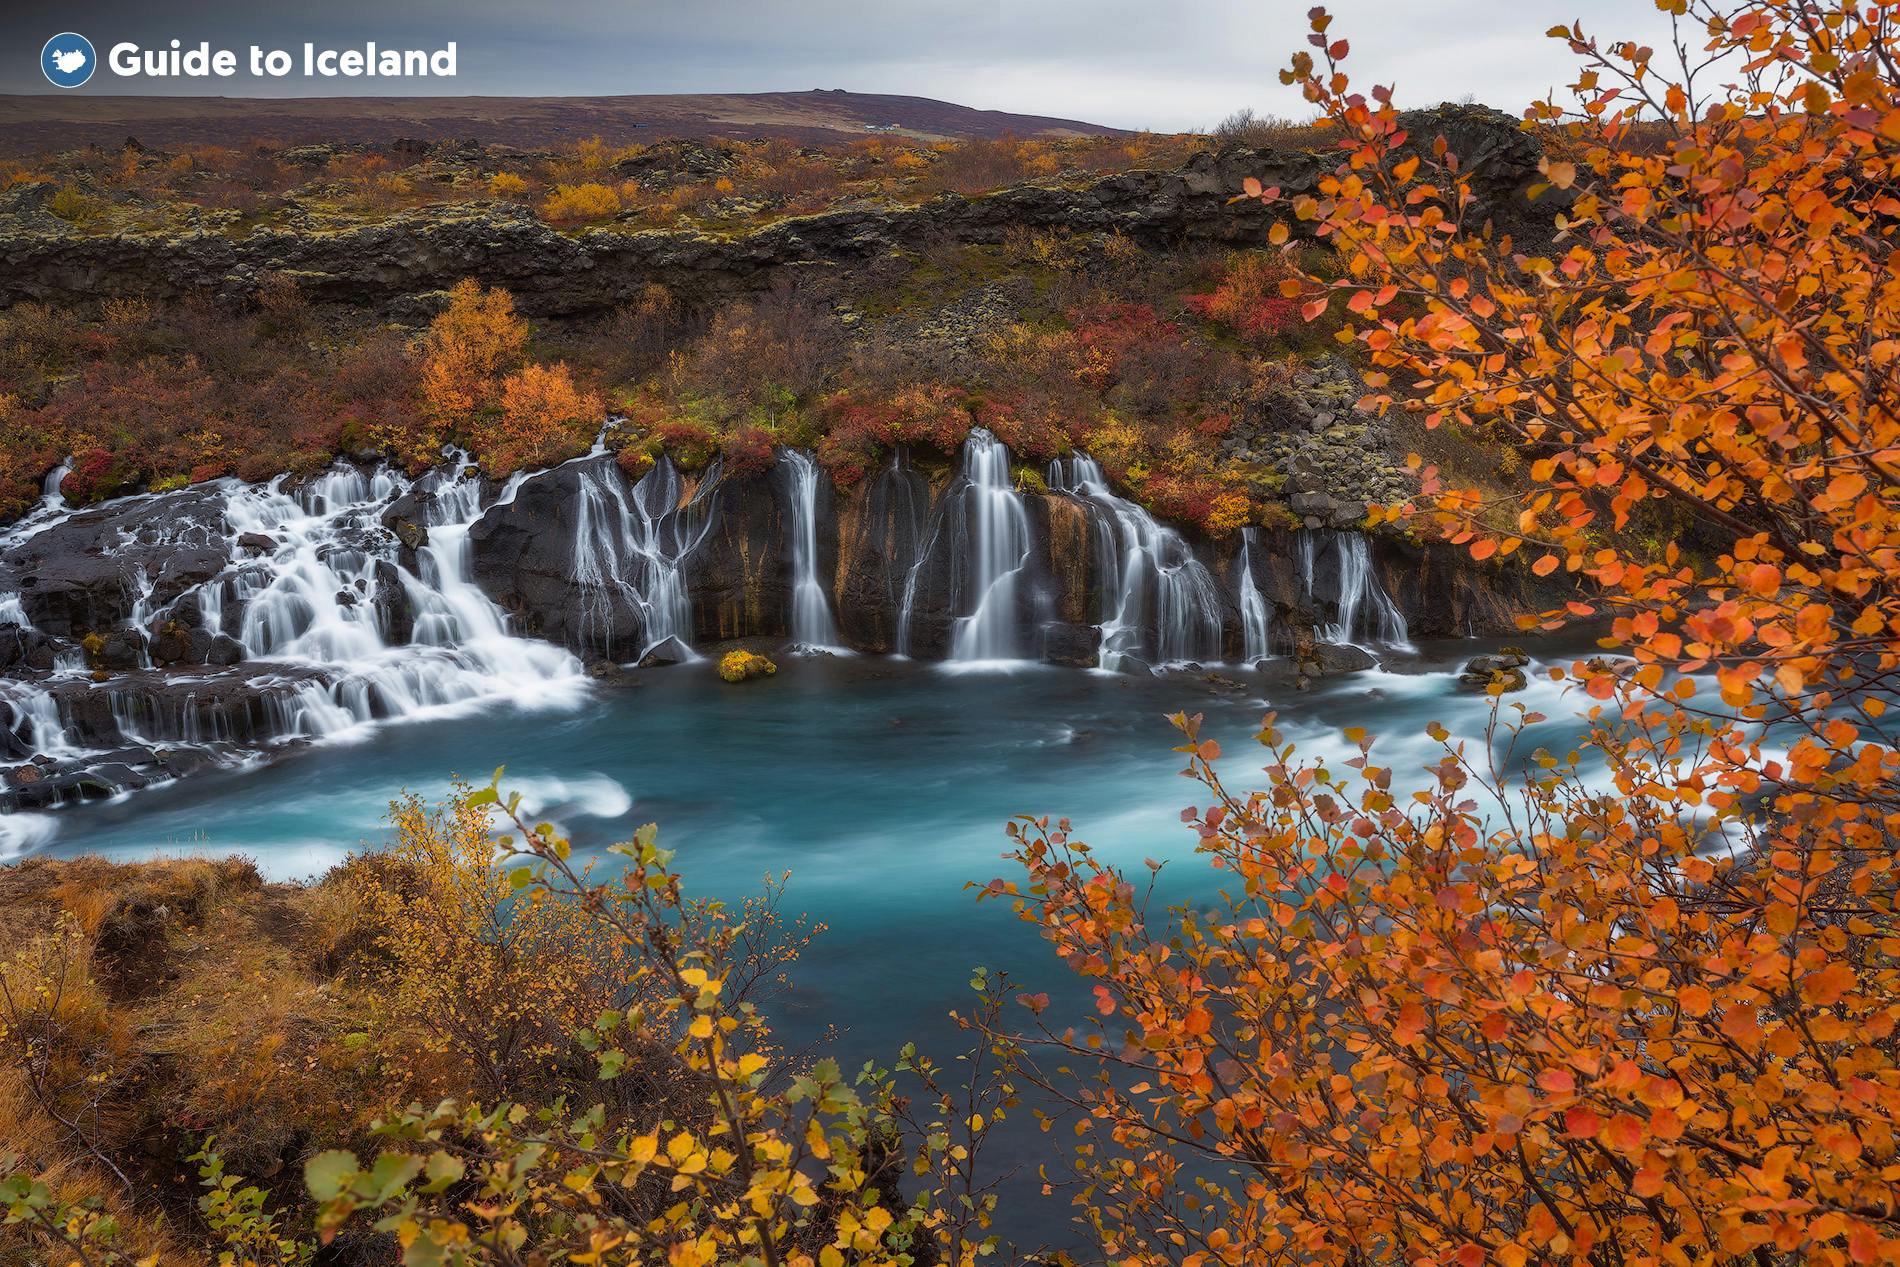 Umgeben von herbstlichen Farben sieht der Wasserfall Hraunfossar noch fantastischer aus als sonst.